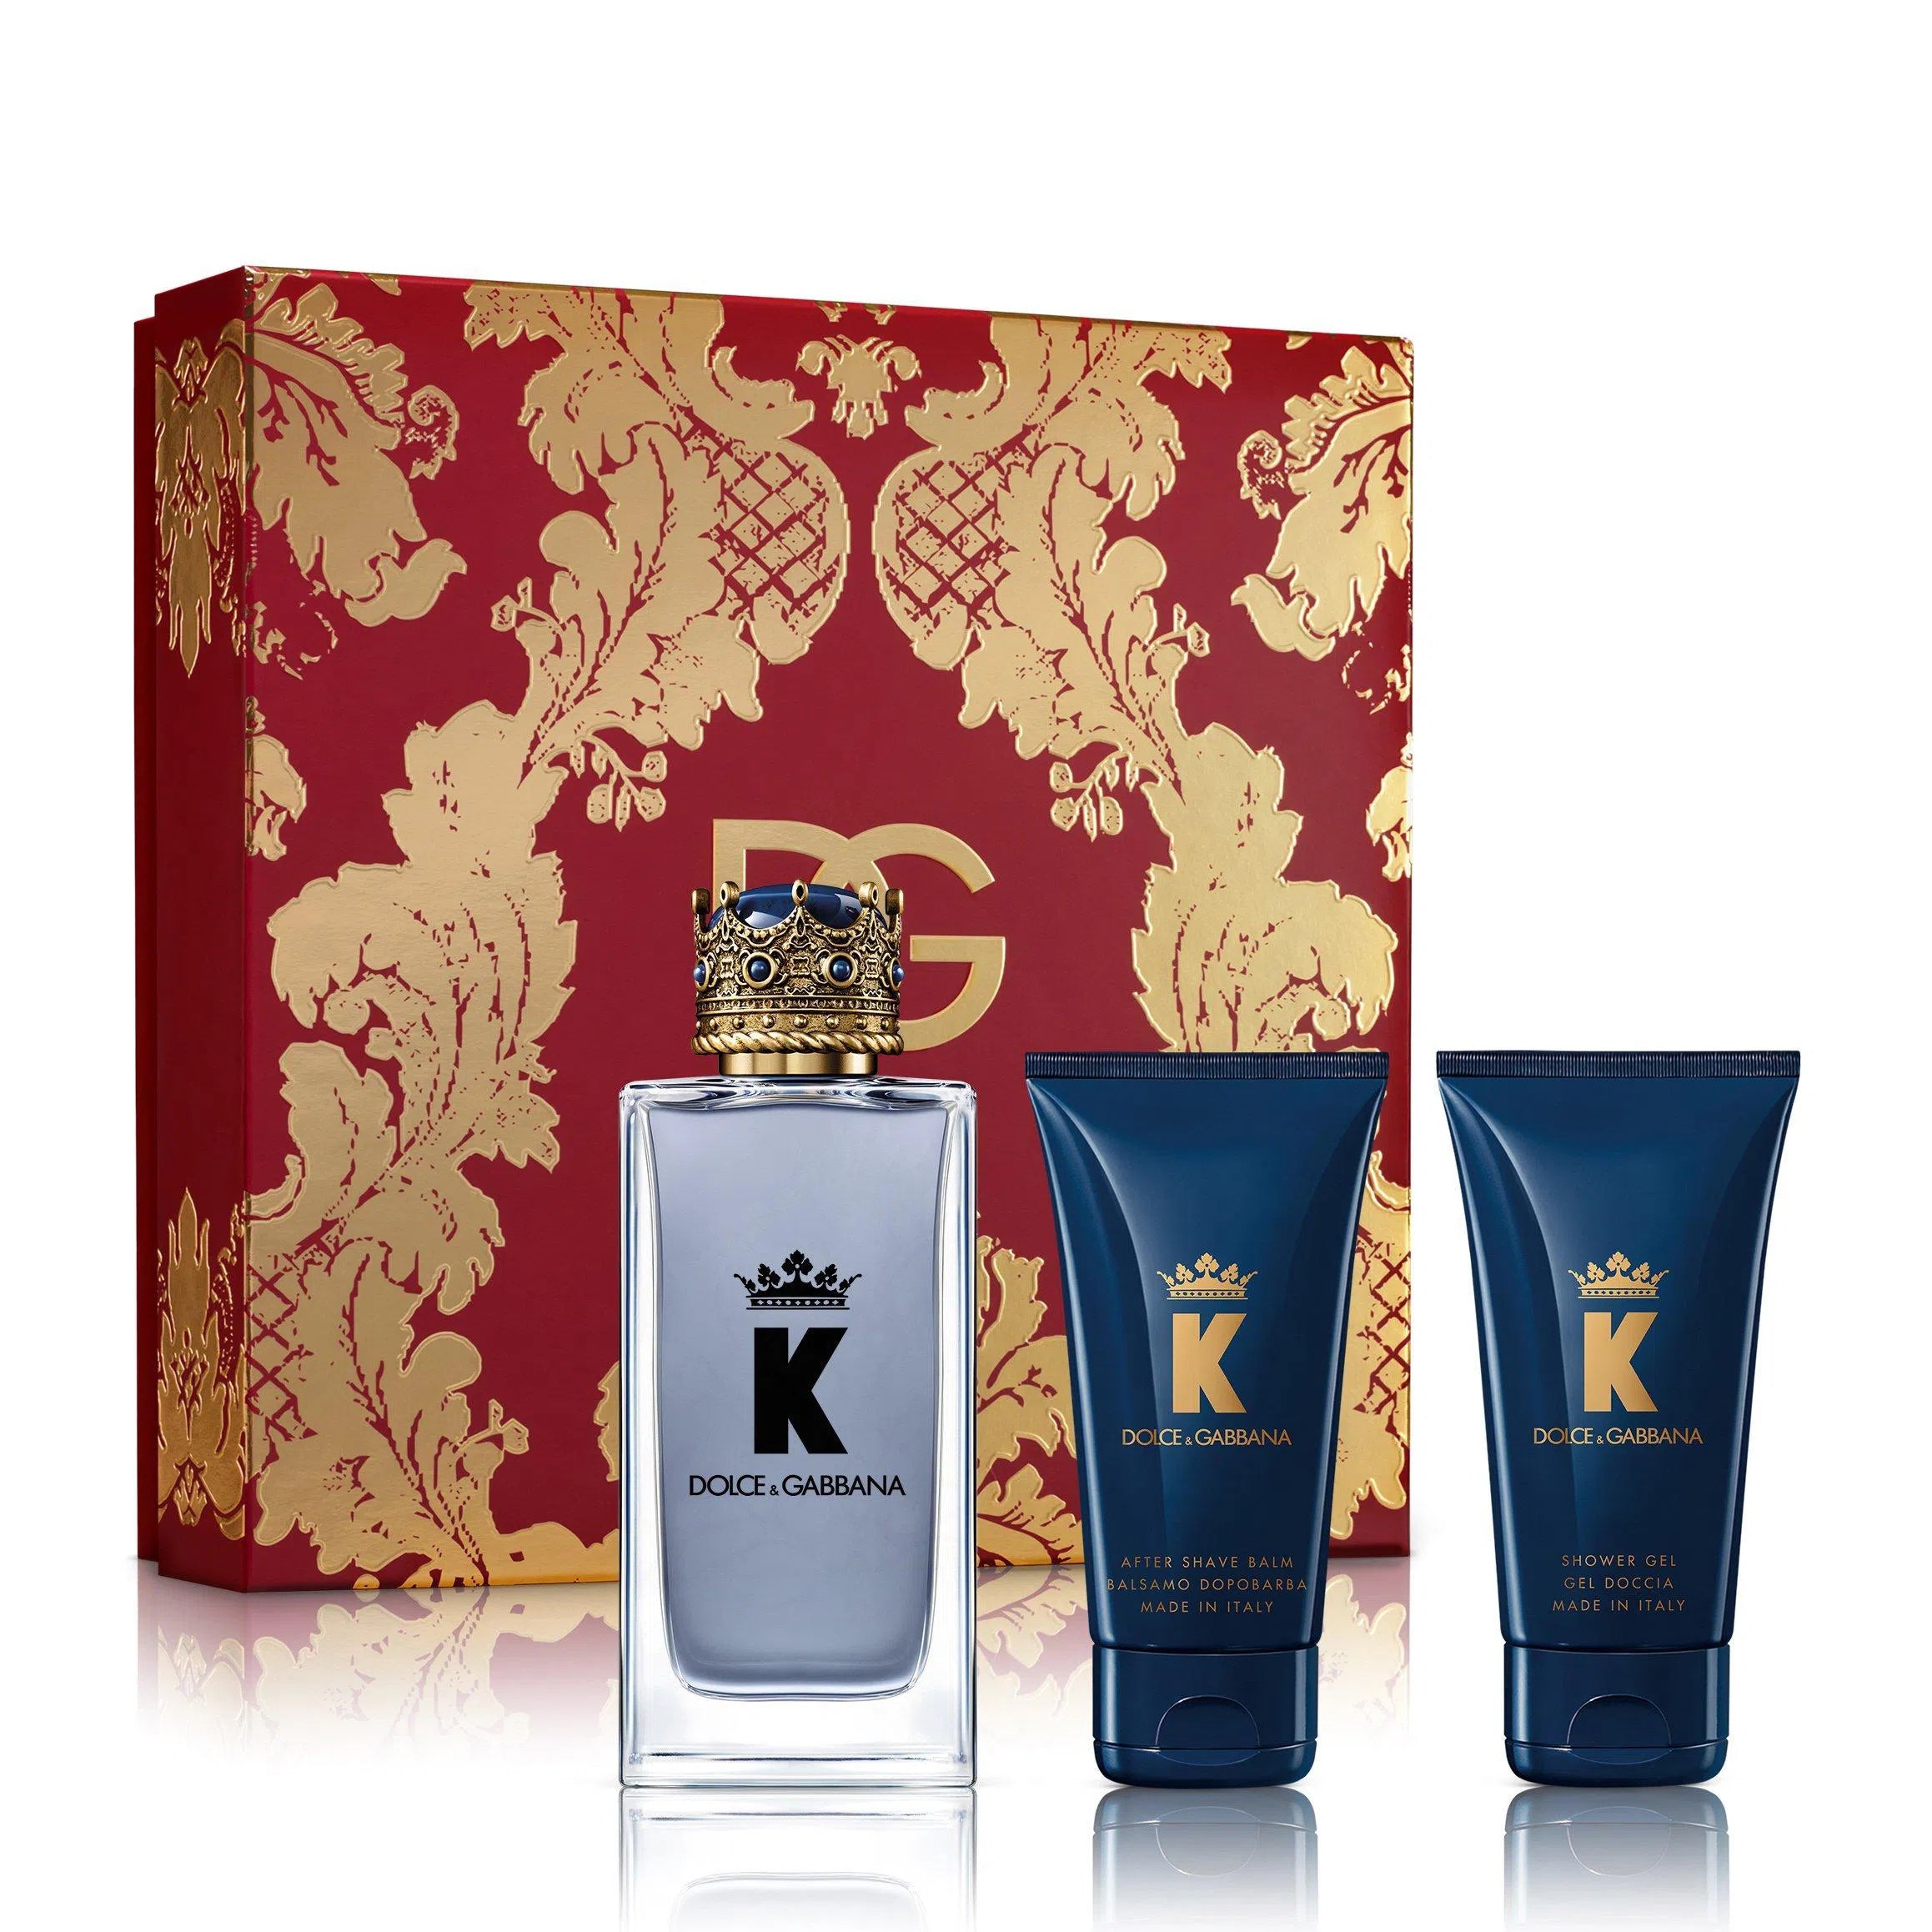 Estuche Dolce & Gabbana K EDT (M) / 3 Pc SP 100 ml; SG 50 ml; AS 50 ml - 8057971185436- Prive Perfumes Honduras